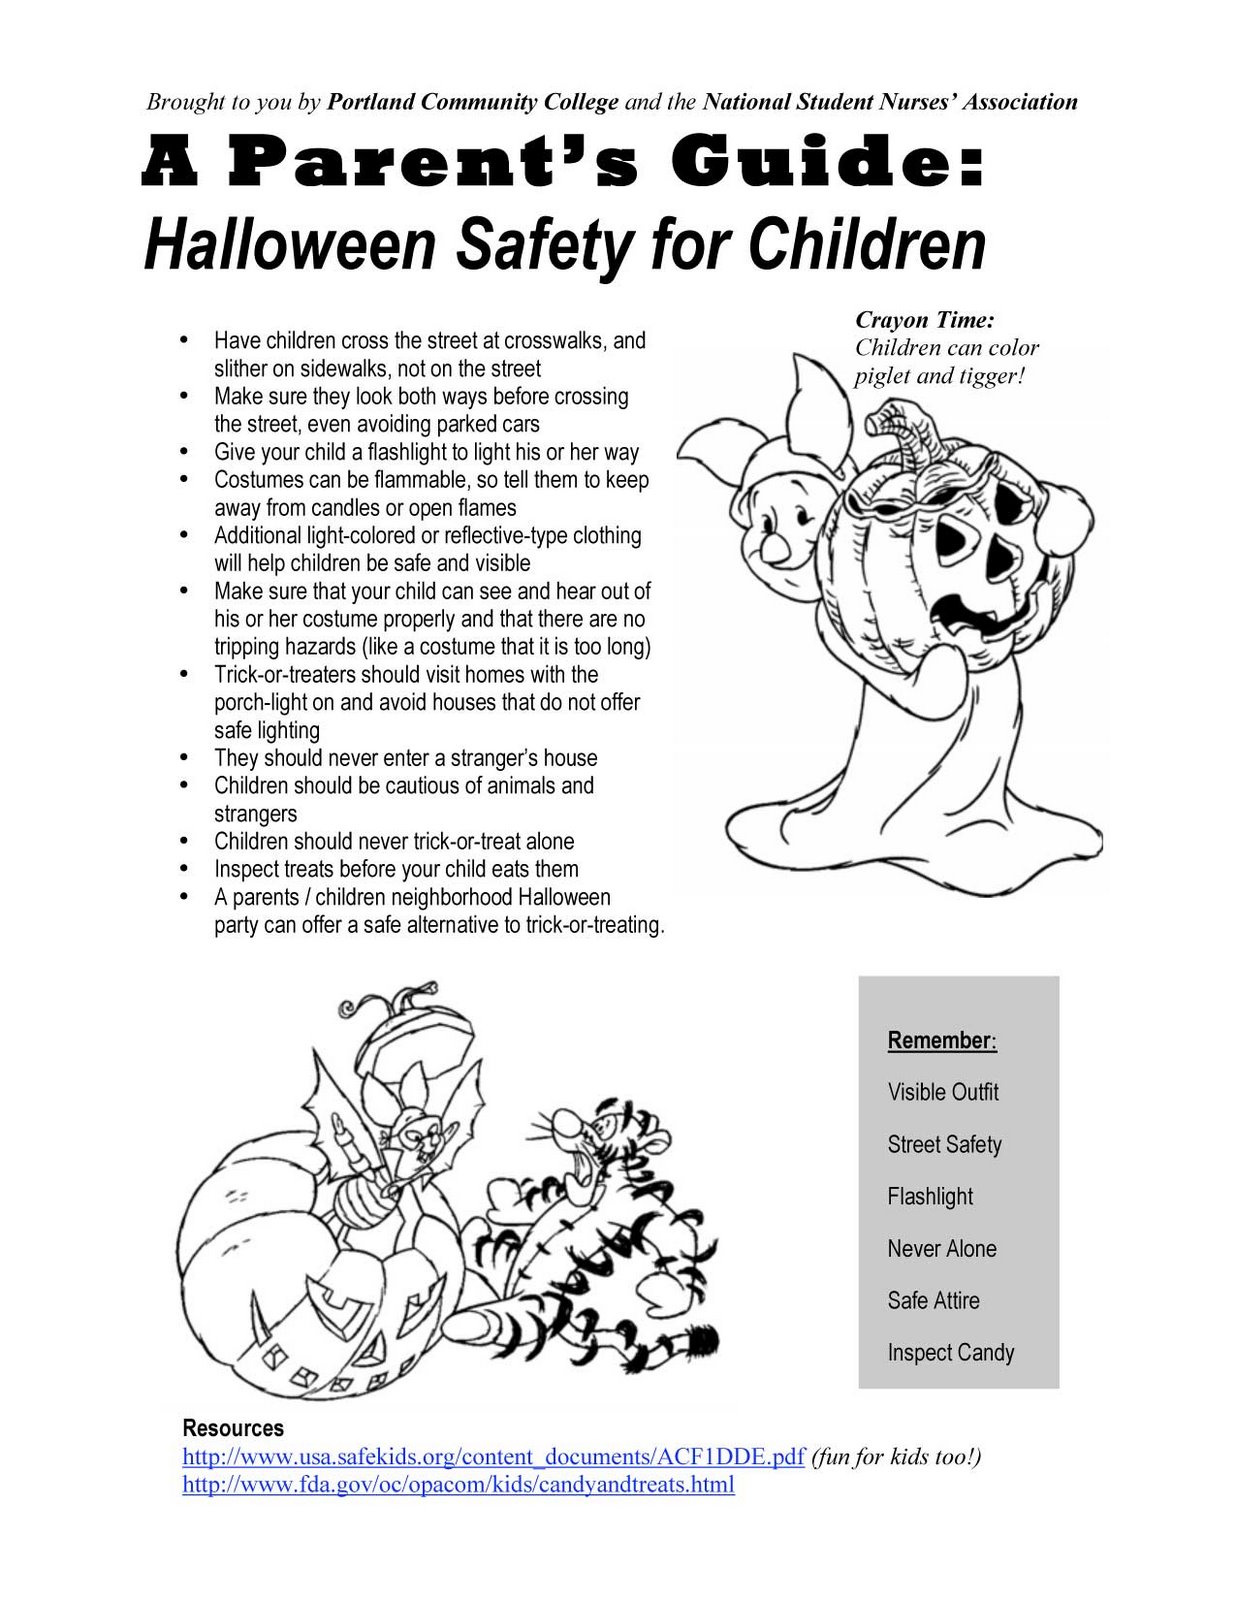 [Halloween-Safety.jpg]